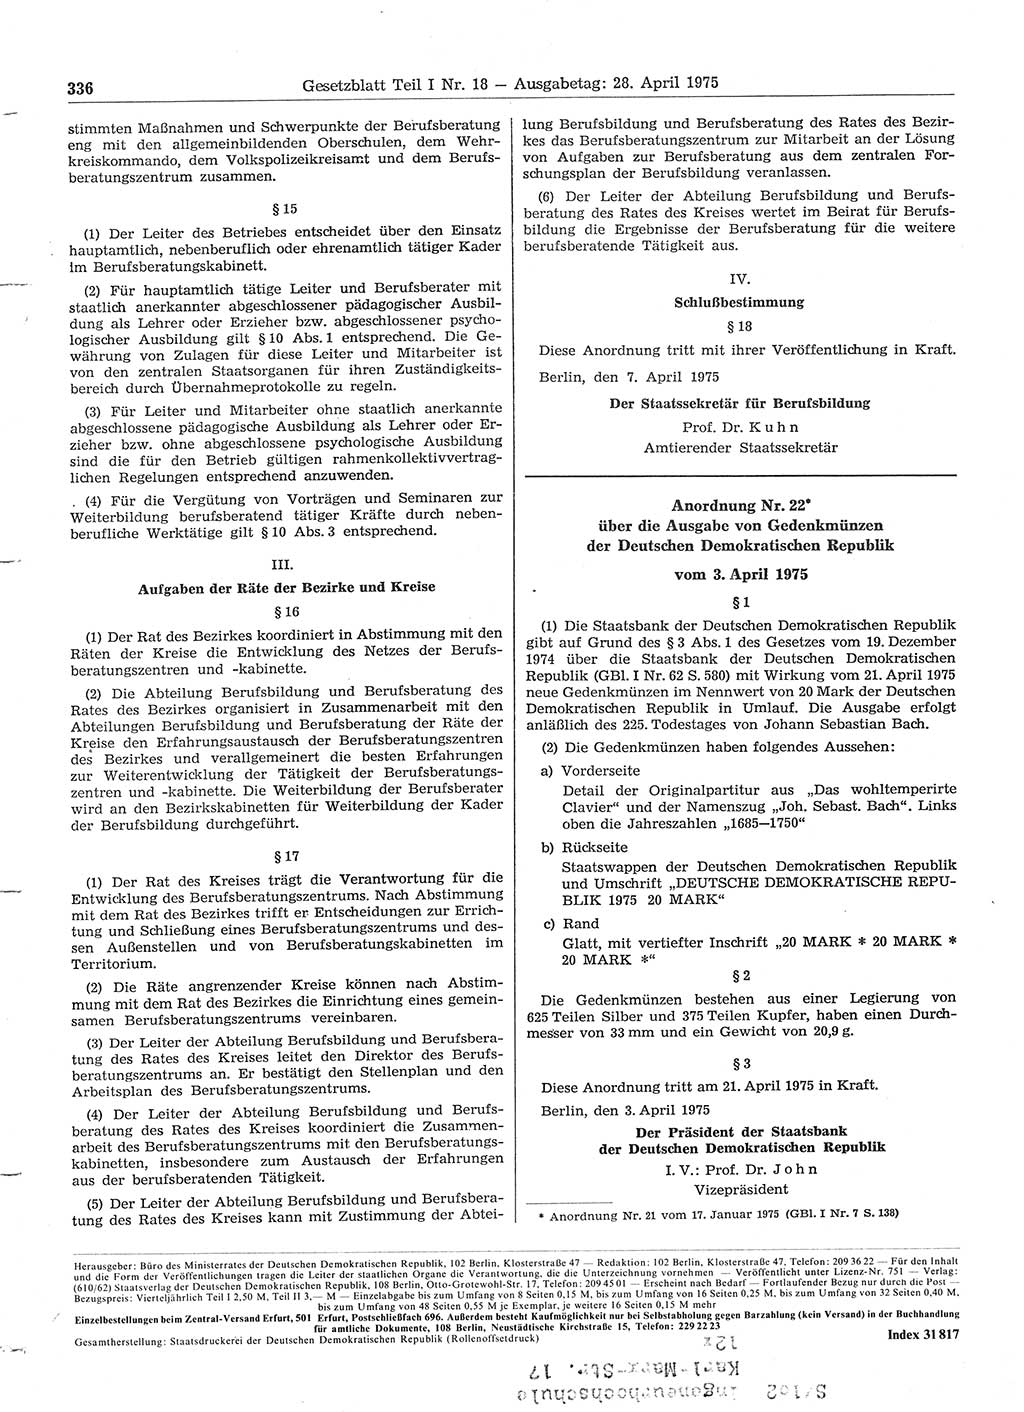 Gesetzblatt (GBl.) der Deutschen Demokratischen Republik (DDR) Teil Ⅰ 1975, Seite 336 (GBl. DDR Ⅰ 1975, S. 336)